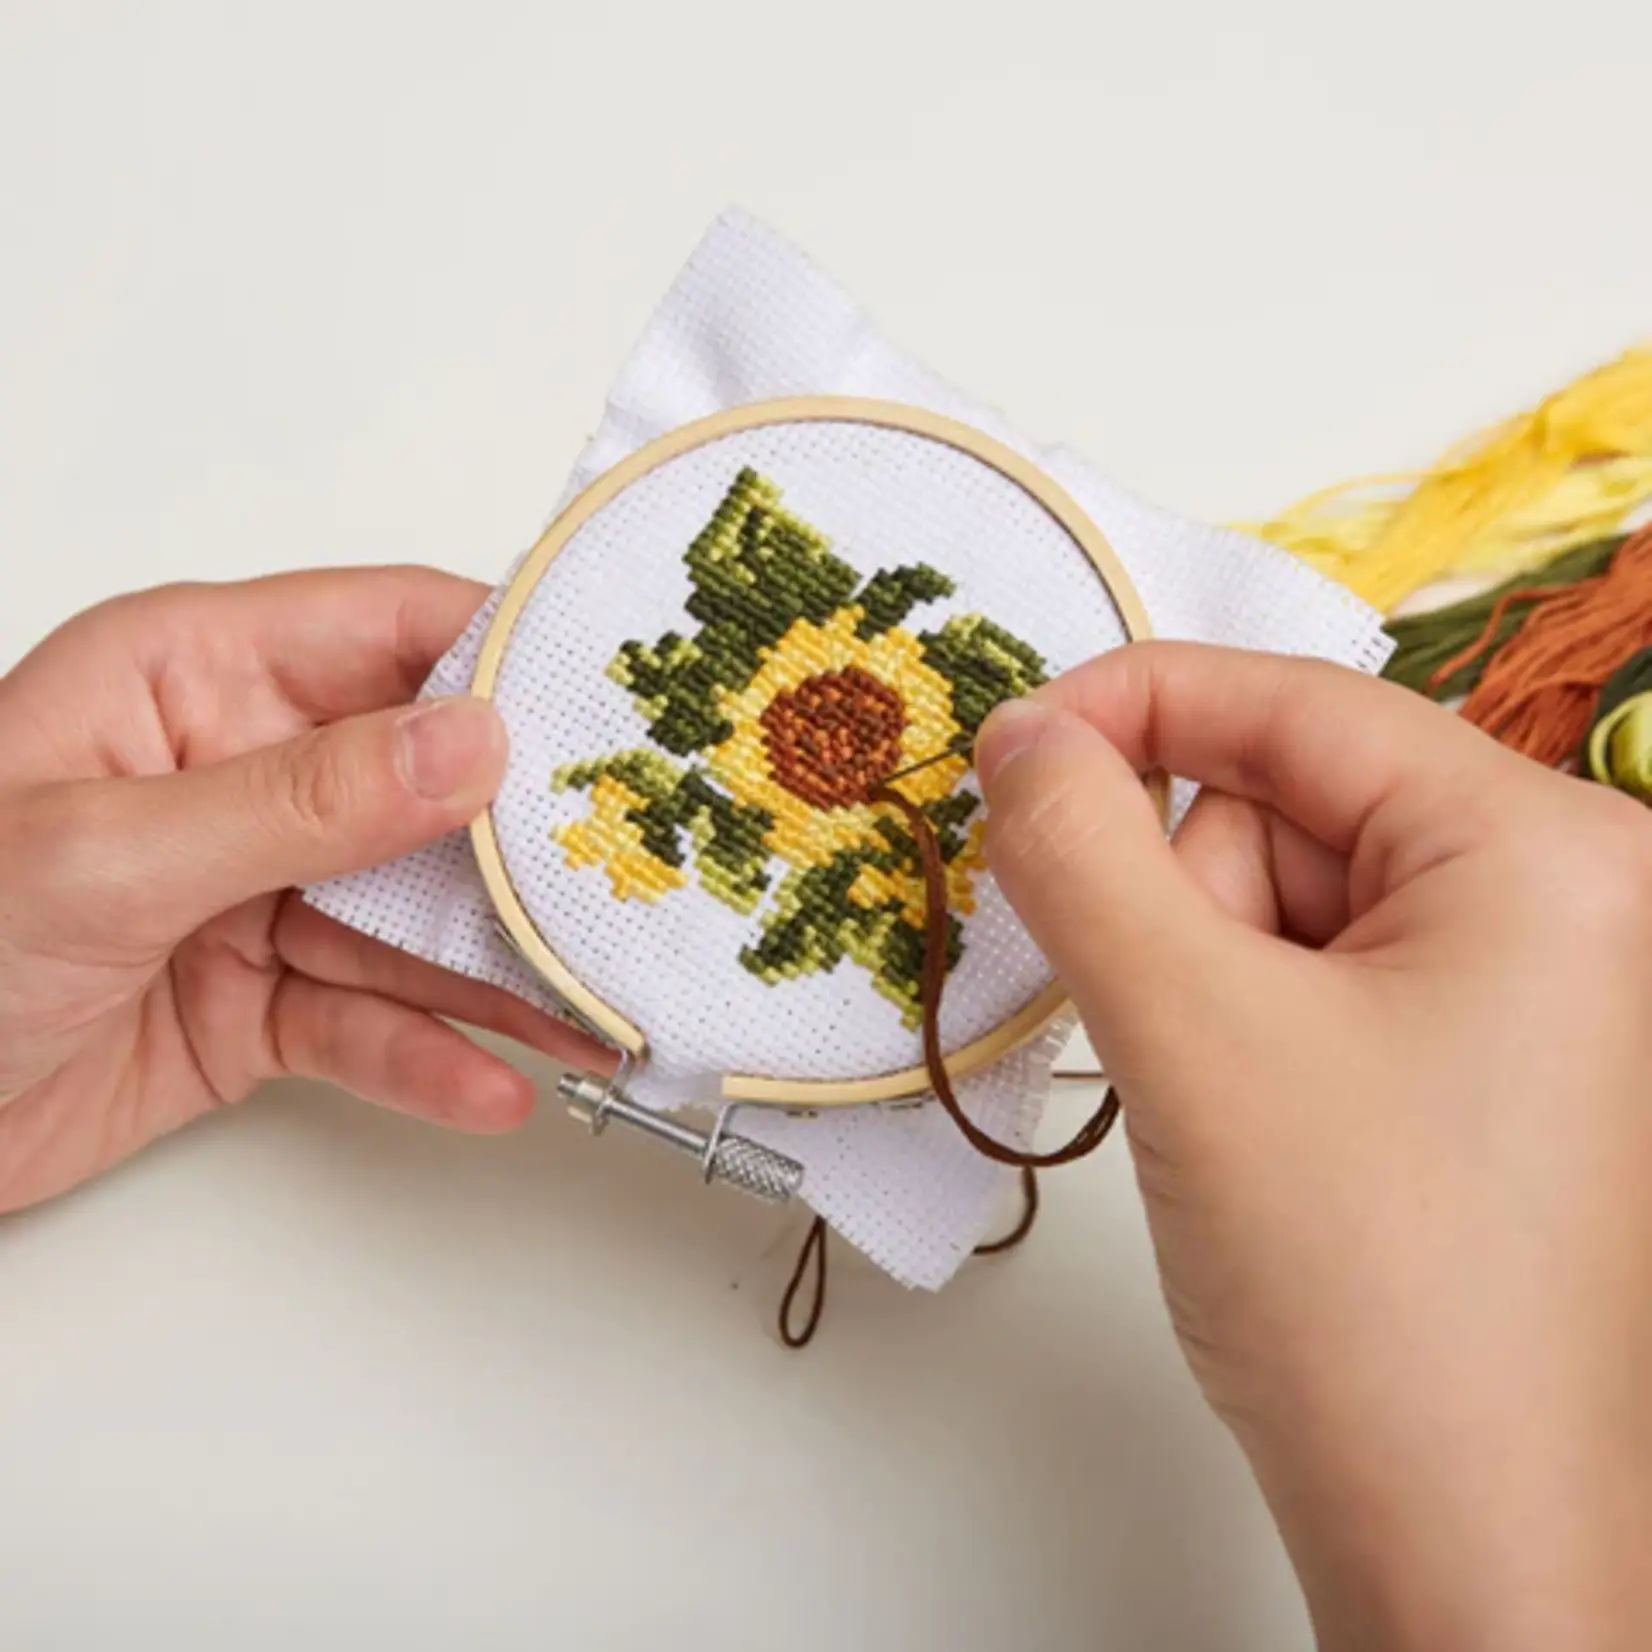 Kikkerkand Cross Stitch Embroidery Kit - Sunflower